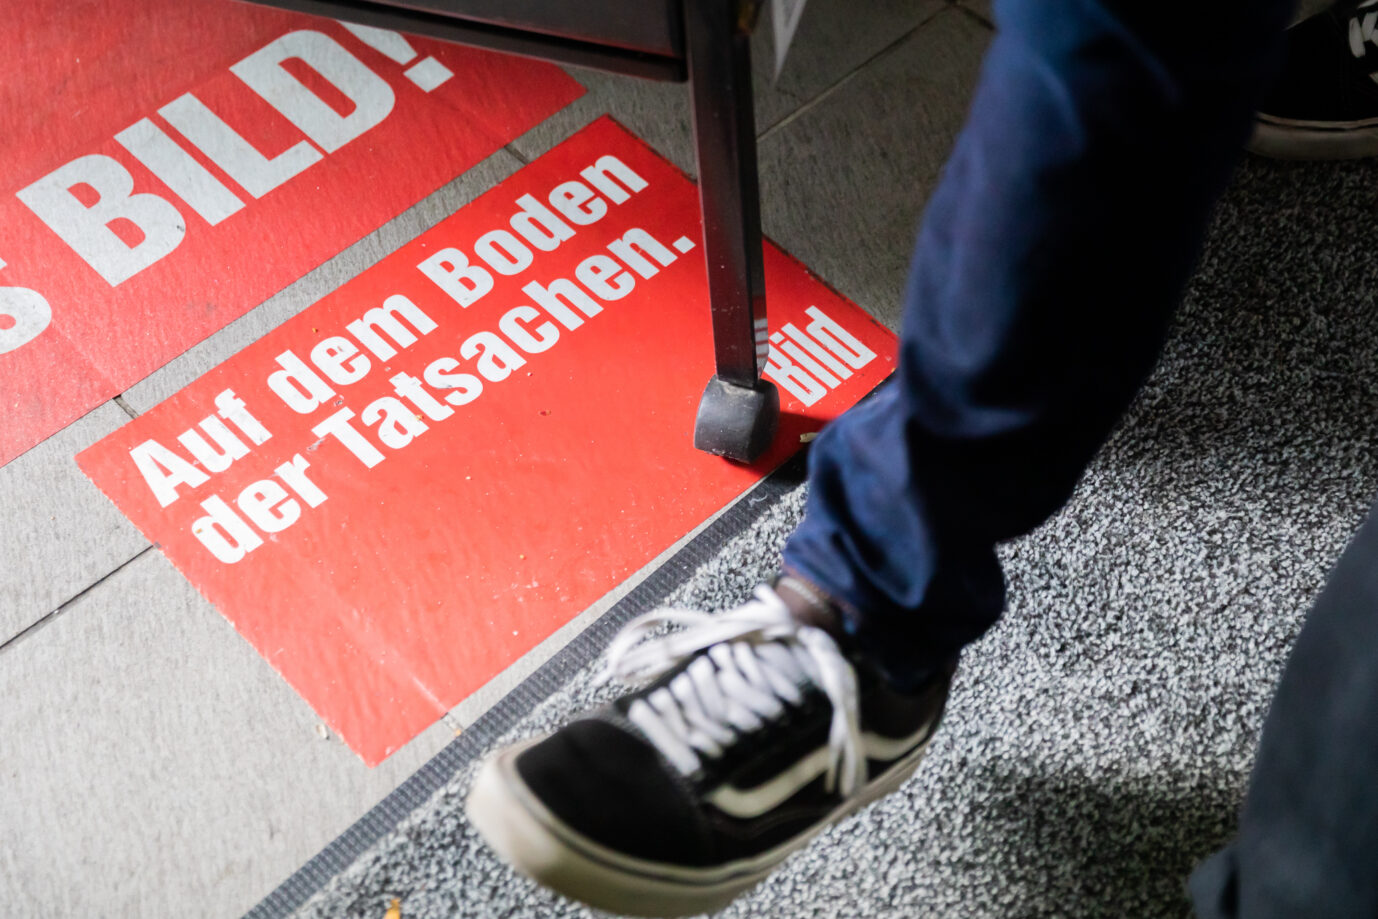 Bild-Zeitung: Redakteurin Judit Sevinç Basad verläßt den Axel Springer Verlag. weil er vor einer „woken Minderheit“ in die Knie gegangen sei